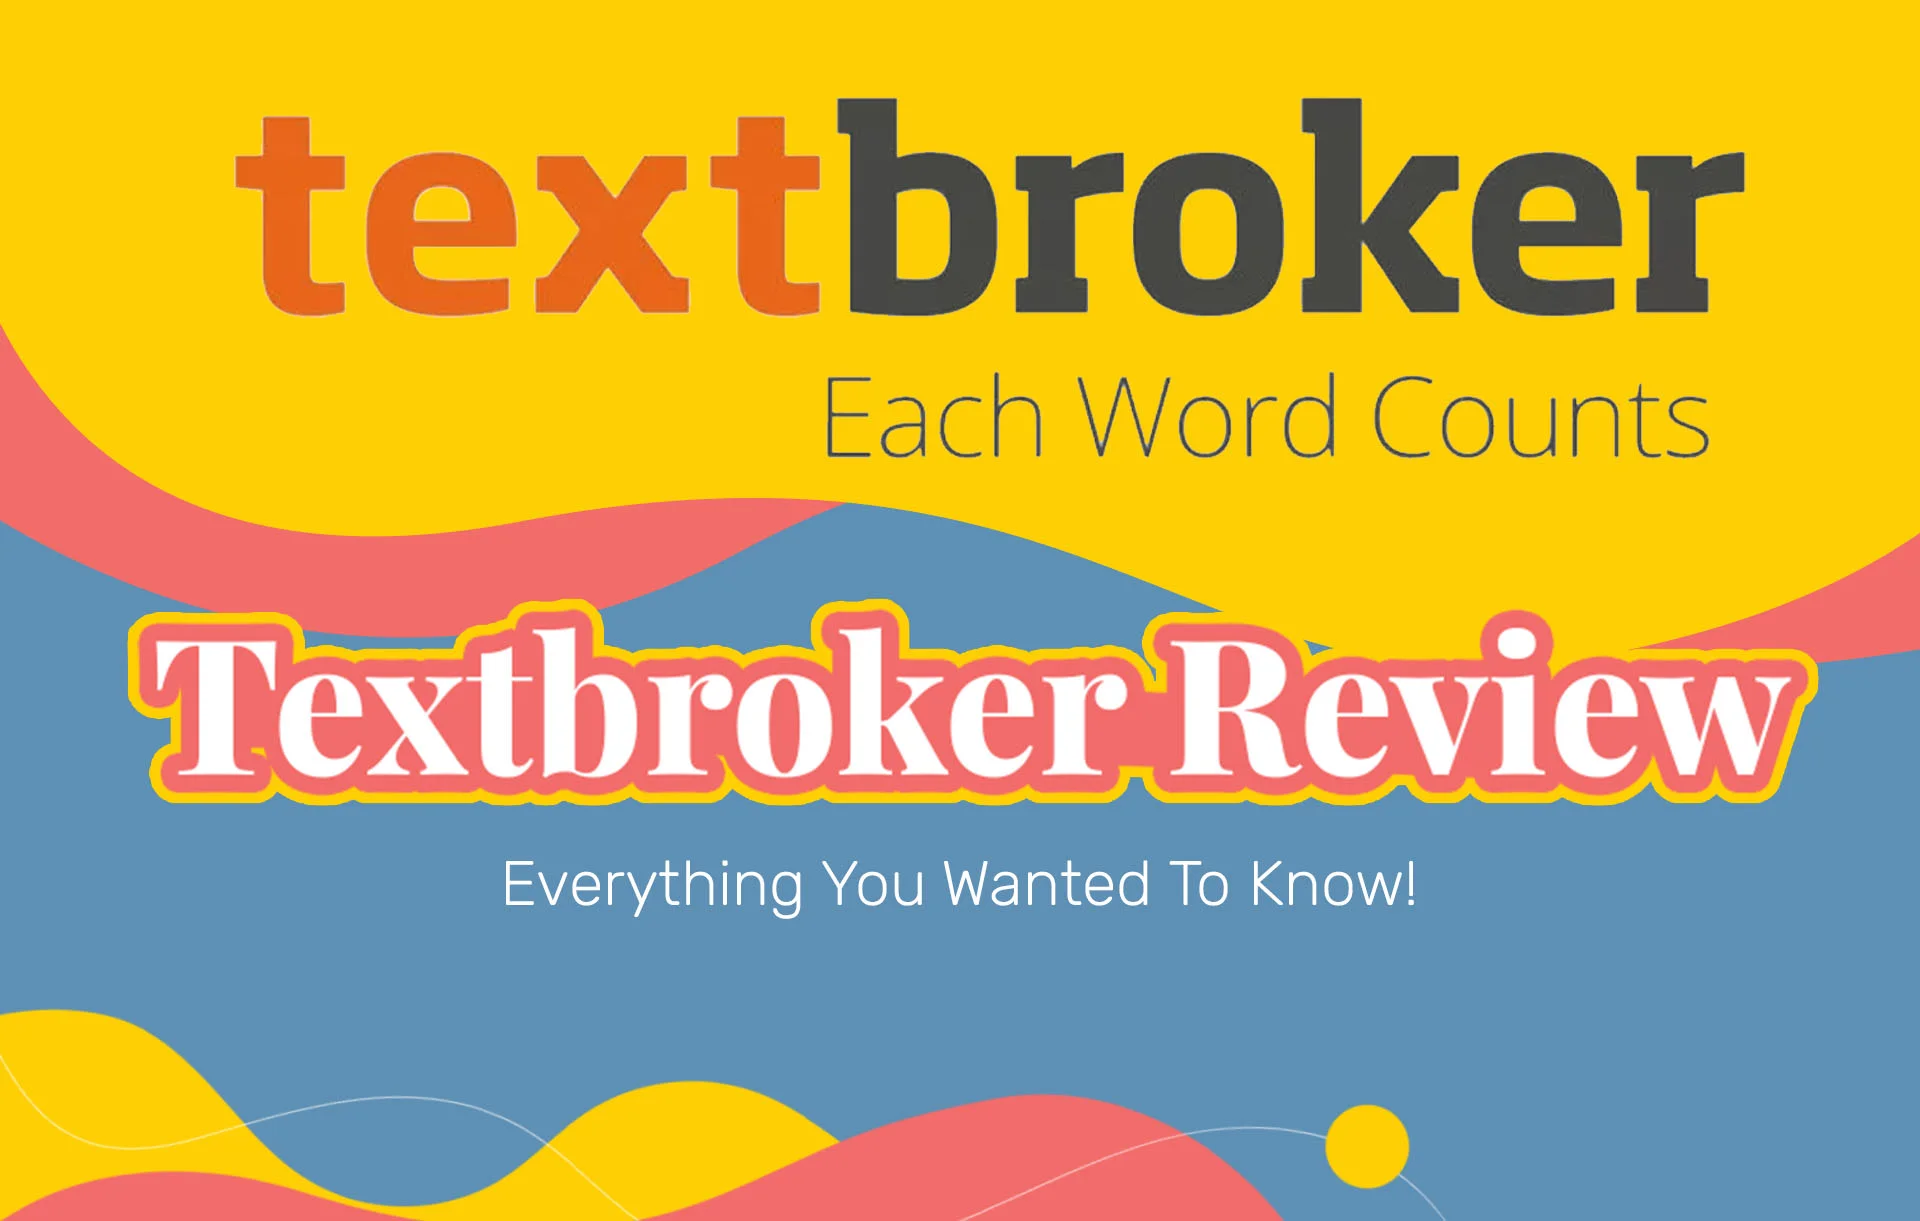 Textbroker Reviews